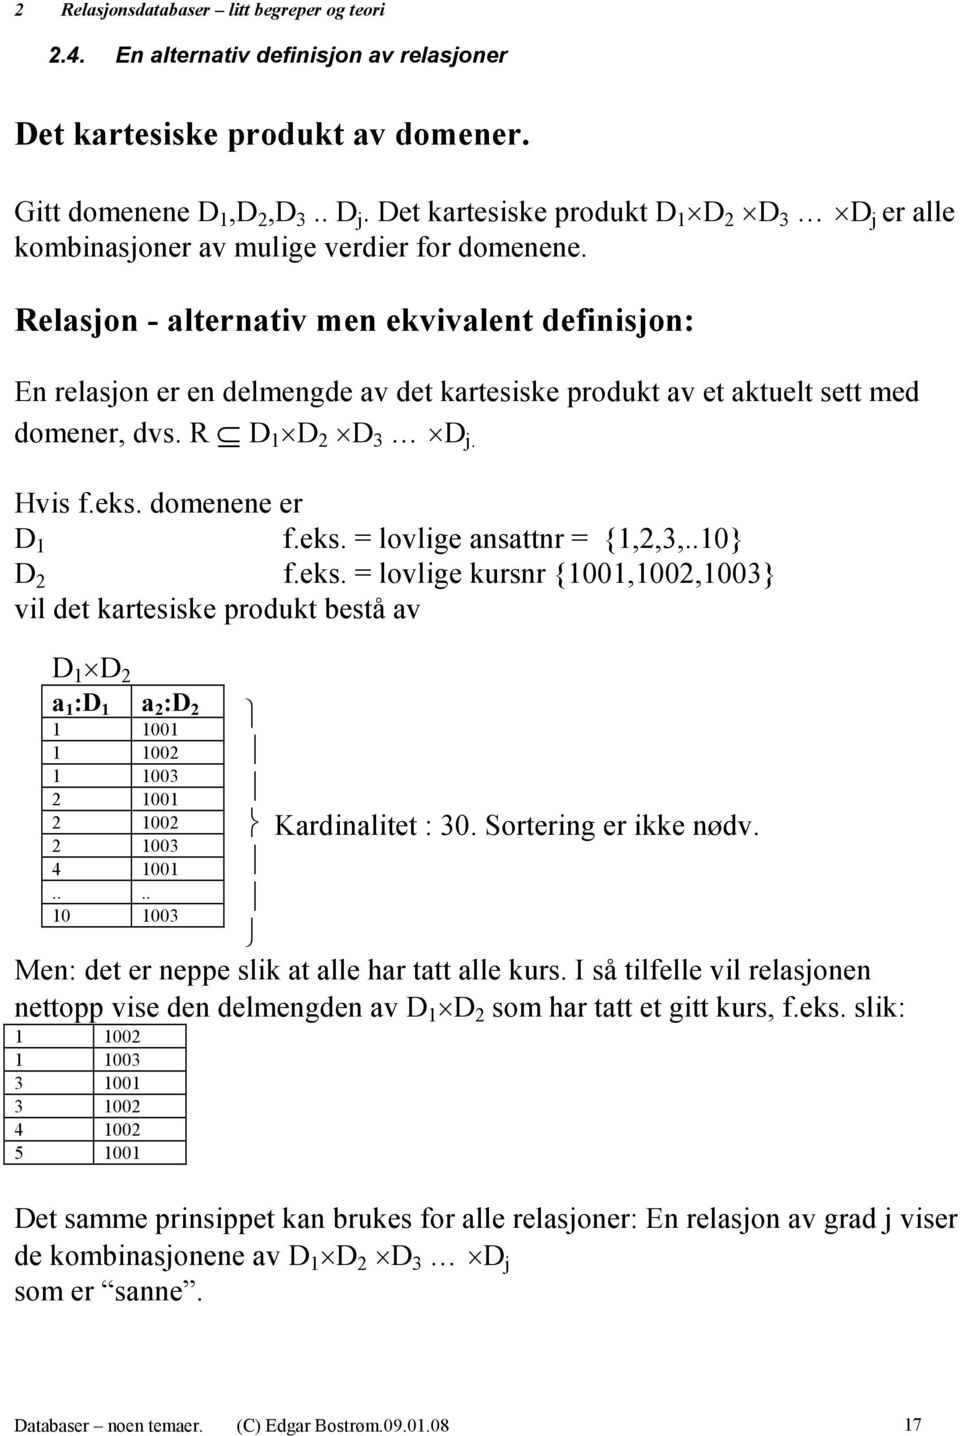 Relasjon - alternativ men ekvivalent definisjon: En relasjon er en delmengde av det kartesiske produkt av et aktuelt sett med domener, dvs. R D 1 D 2 D 3 D j. Hvis f.eks. domenene er D 1 f.eks. = lovlige ansattnr = {1,2,3,.